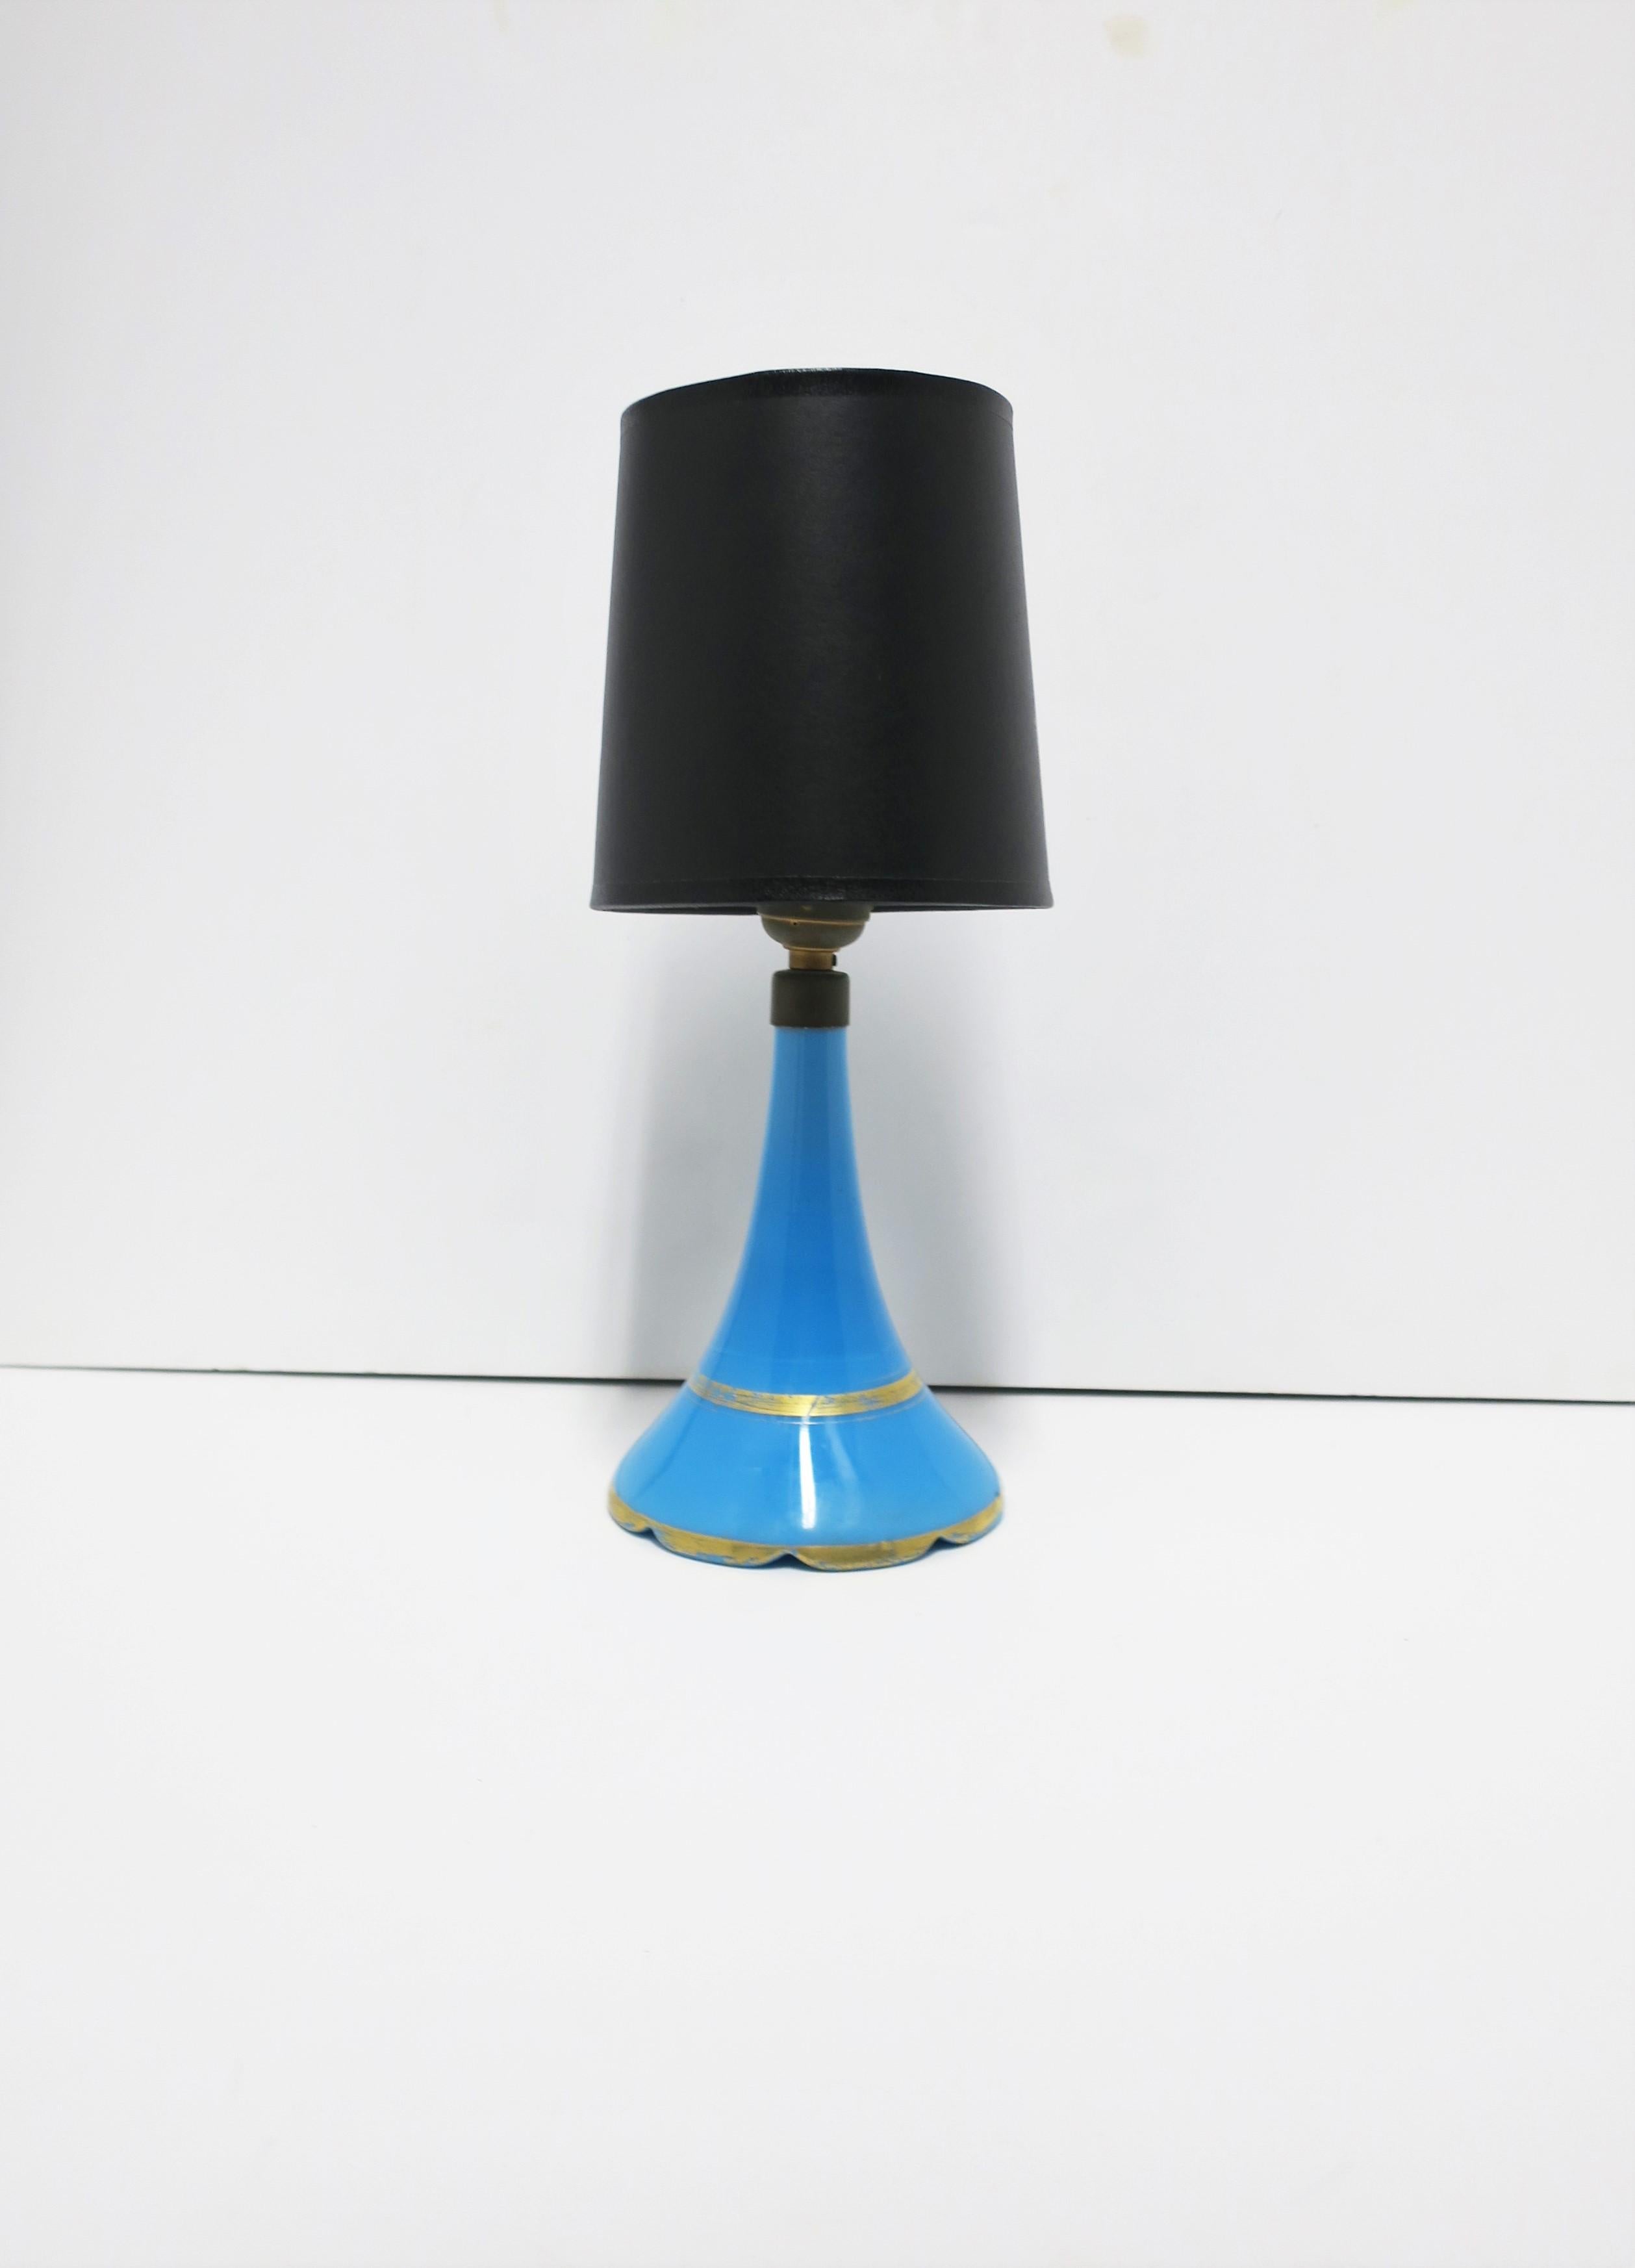 Magnifique lampe italienne en verre opalin bleu, vers le début ou le milieu du XXe siècle, Italie. La lampe est d'un bleu ciel azur avec des détails dorés et une base aux bords festonnés. La lampe comprend un abat-jour en soie blanc cassé. En bon